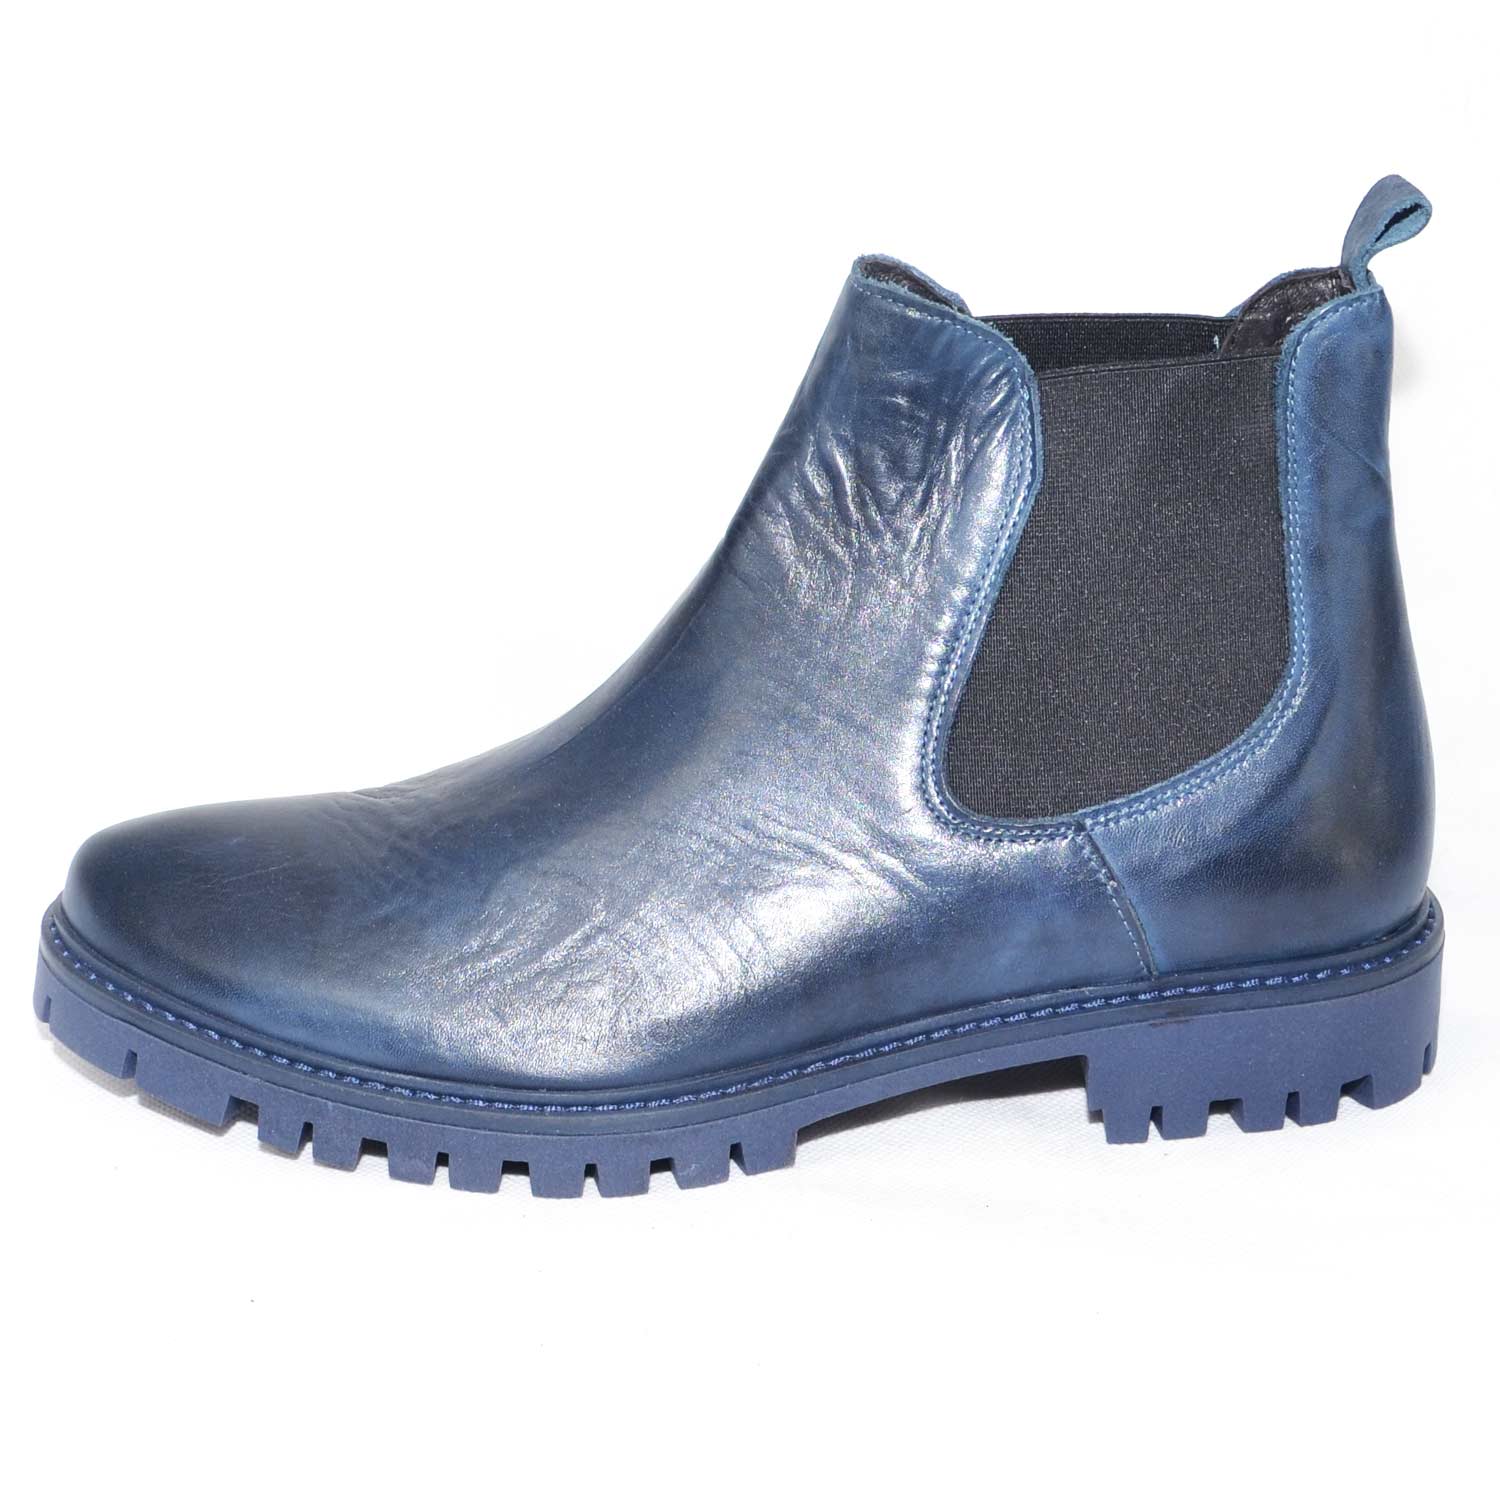 Scarpe uomo stivaletti fondo light roccia blu elastico blu vera pelle made  in italy moda giovanile uomo beatles Malu Shoes | MaluShoes